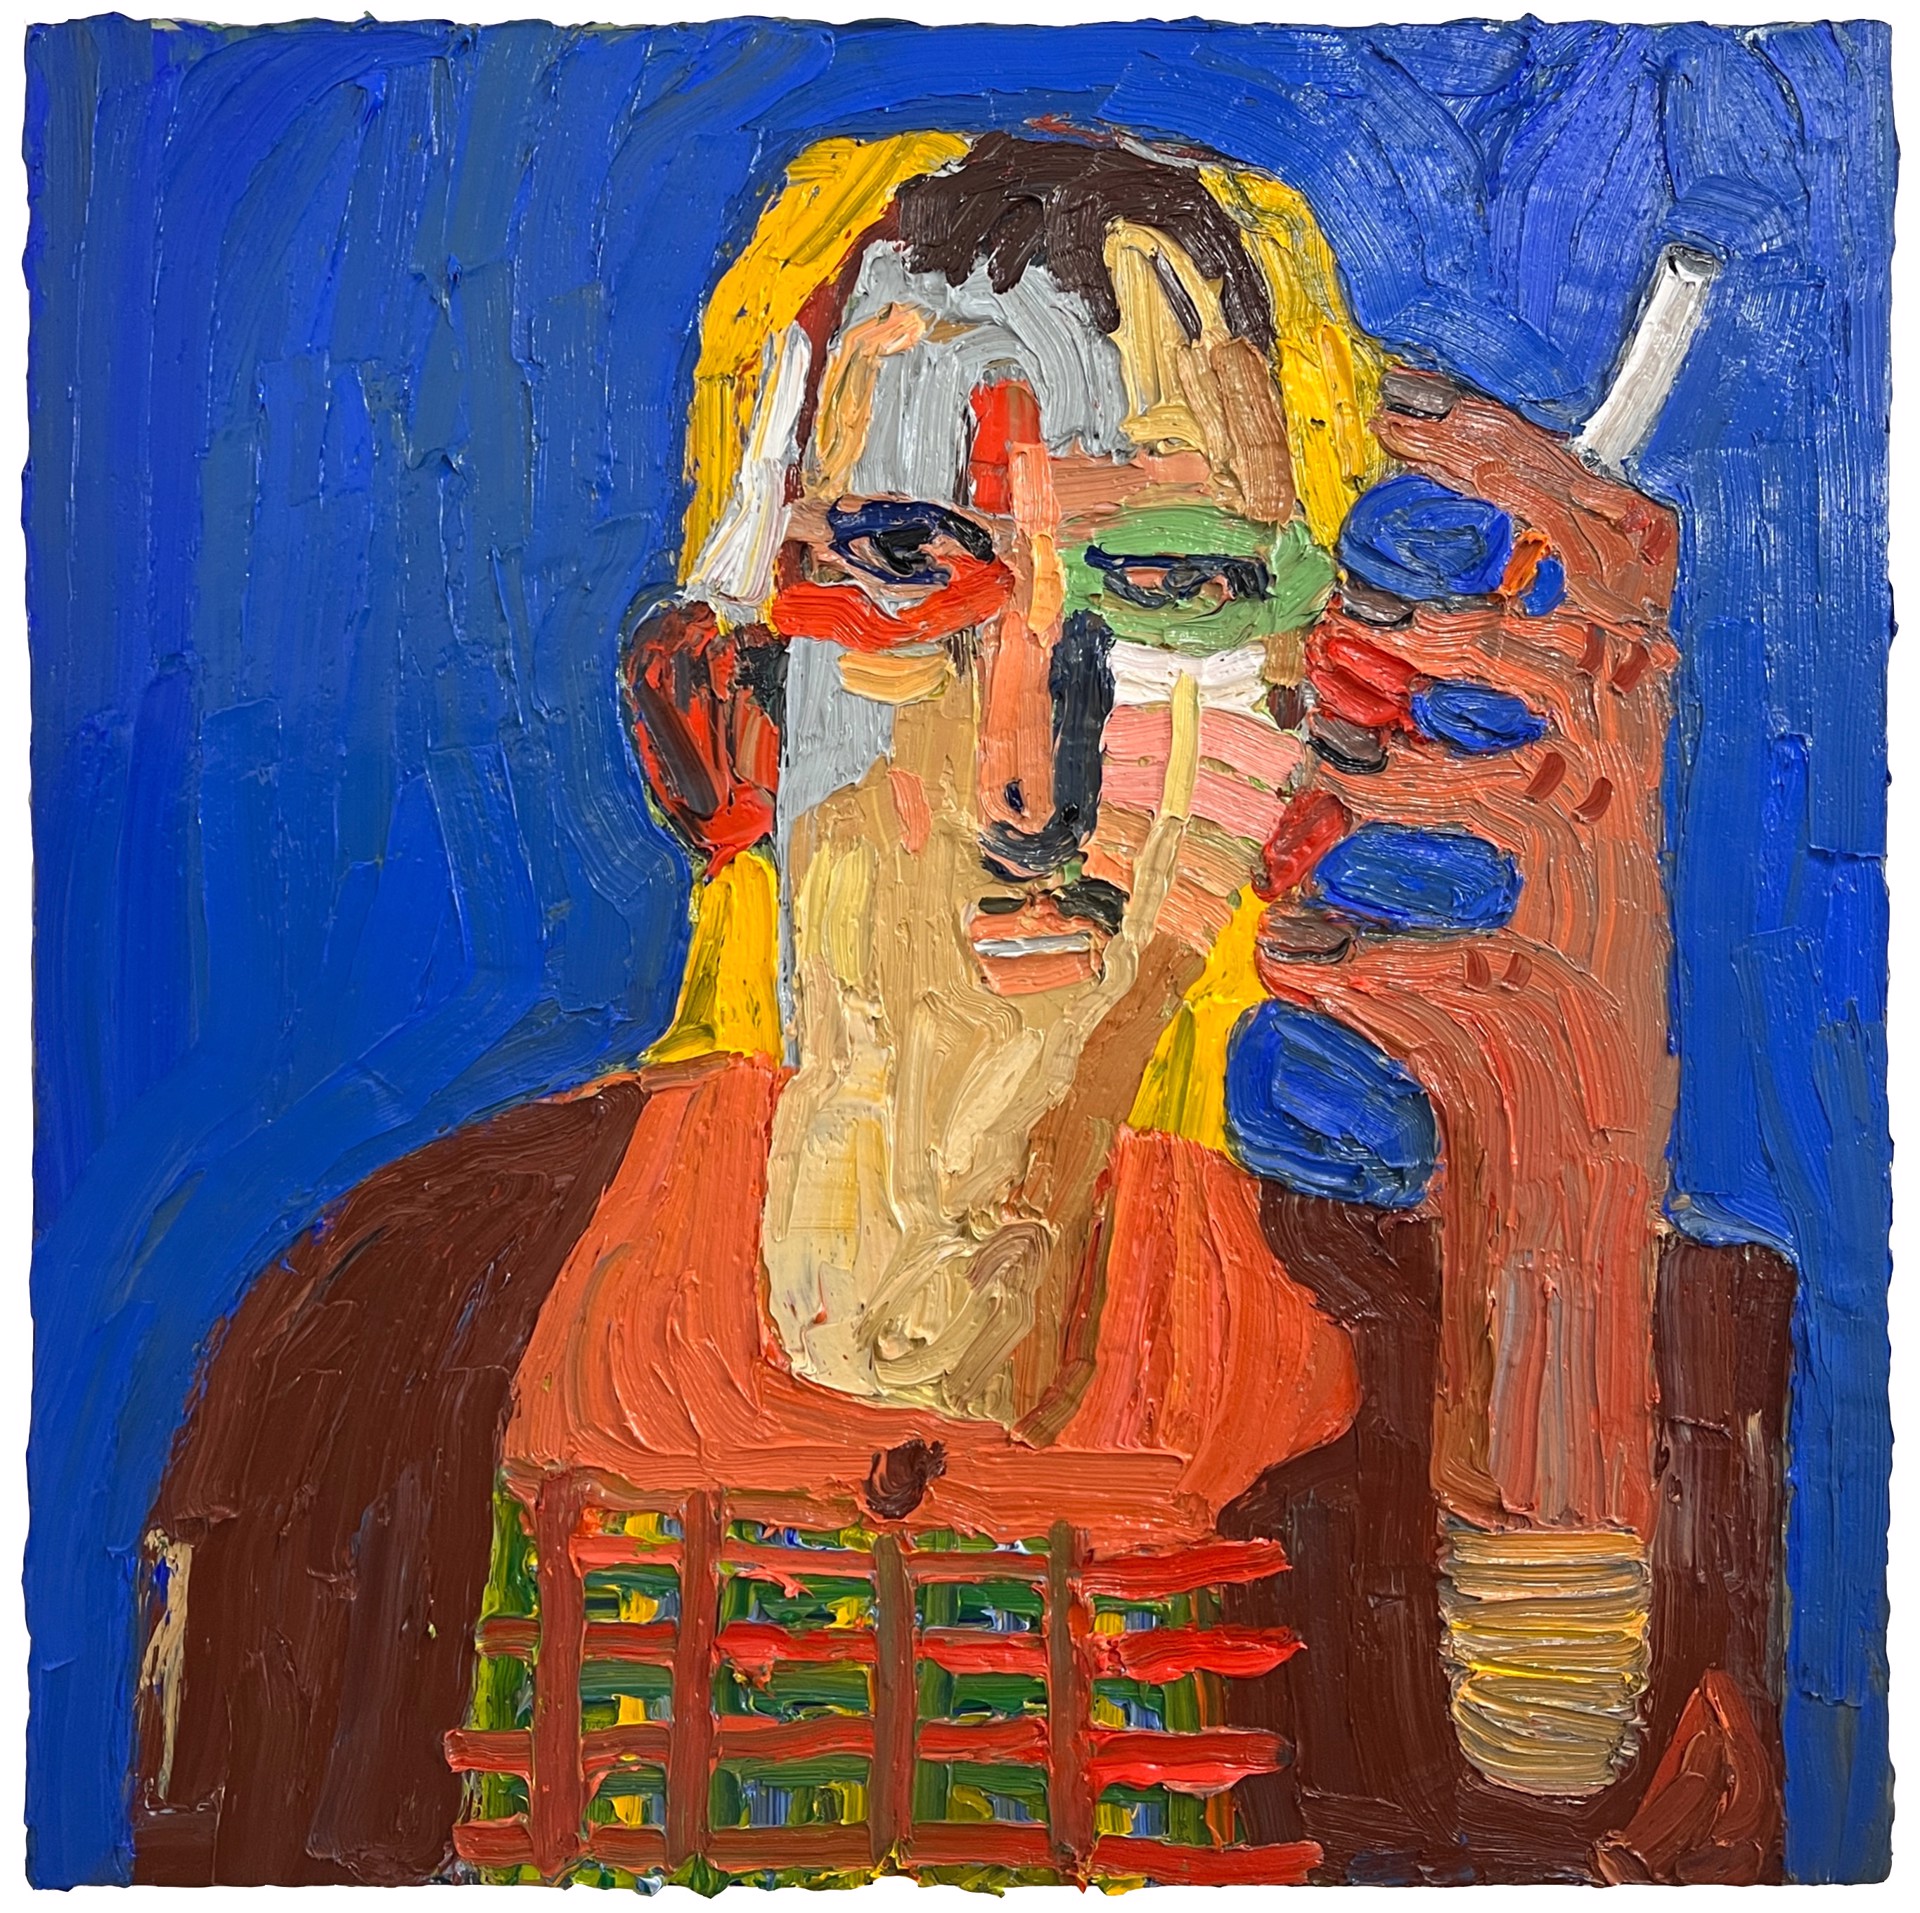 Self Portrait (with Cigarette) by Emilio Villalba